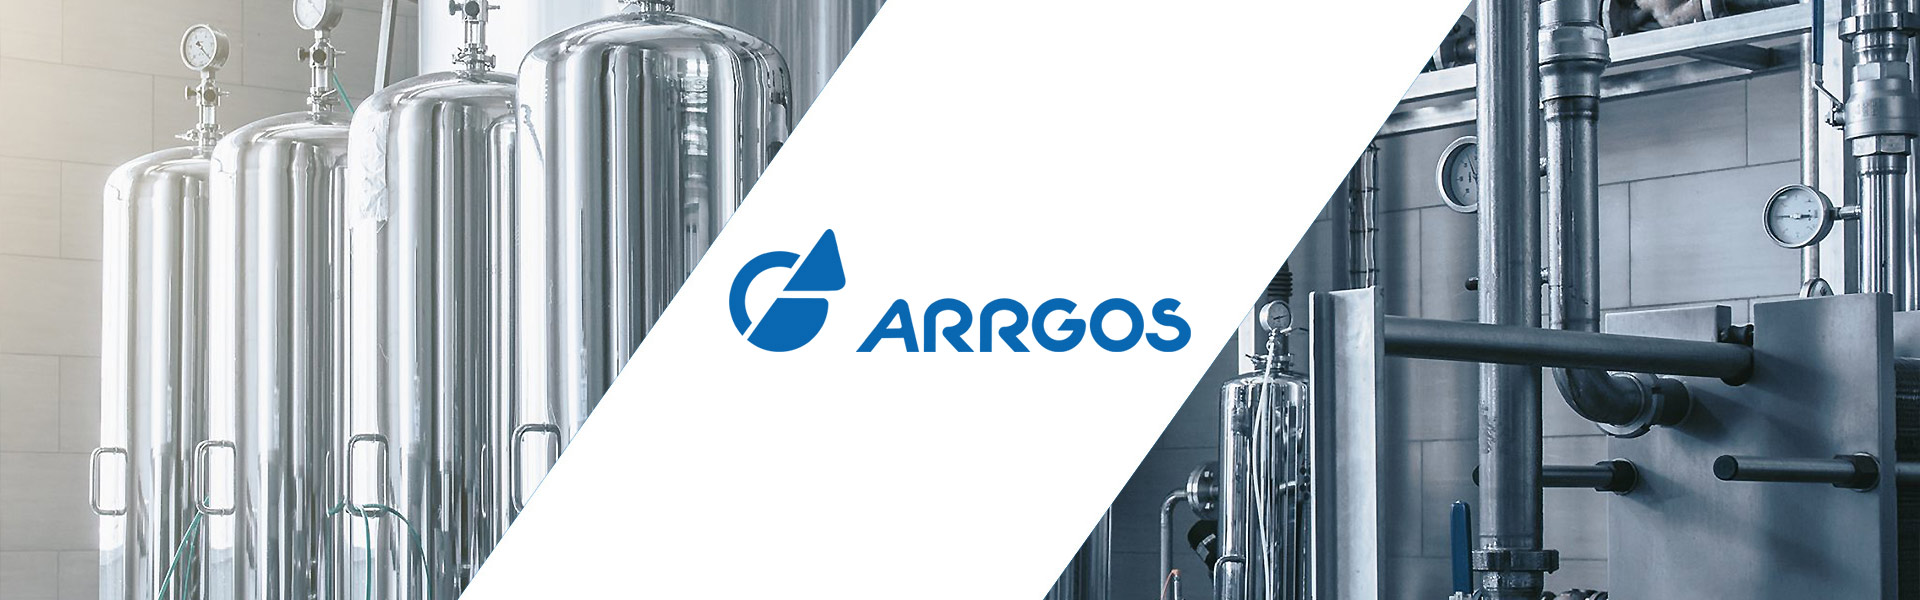 Arrgos-Zentrifugen-Druckbehaelter_Unternehmen